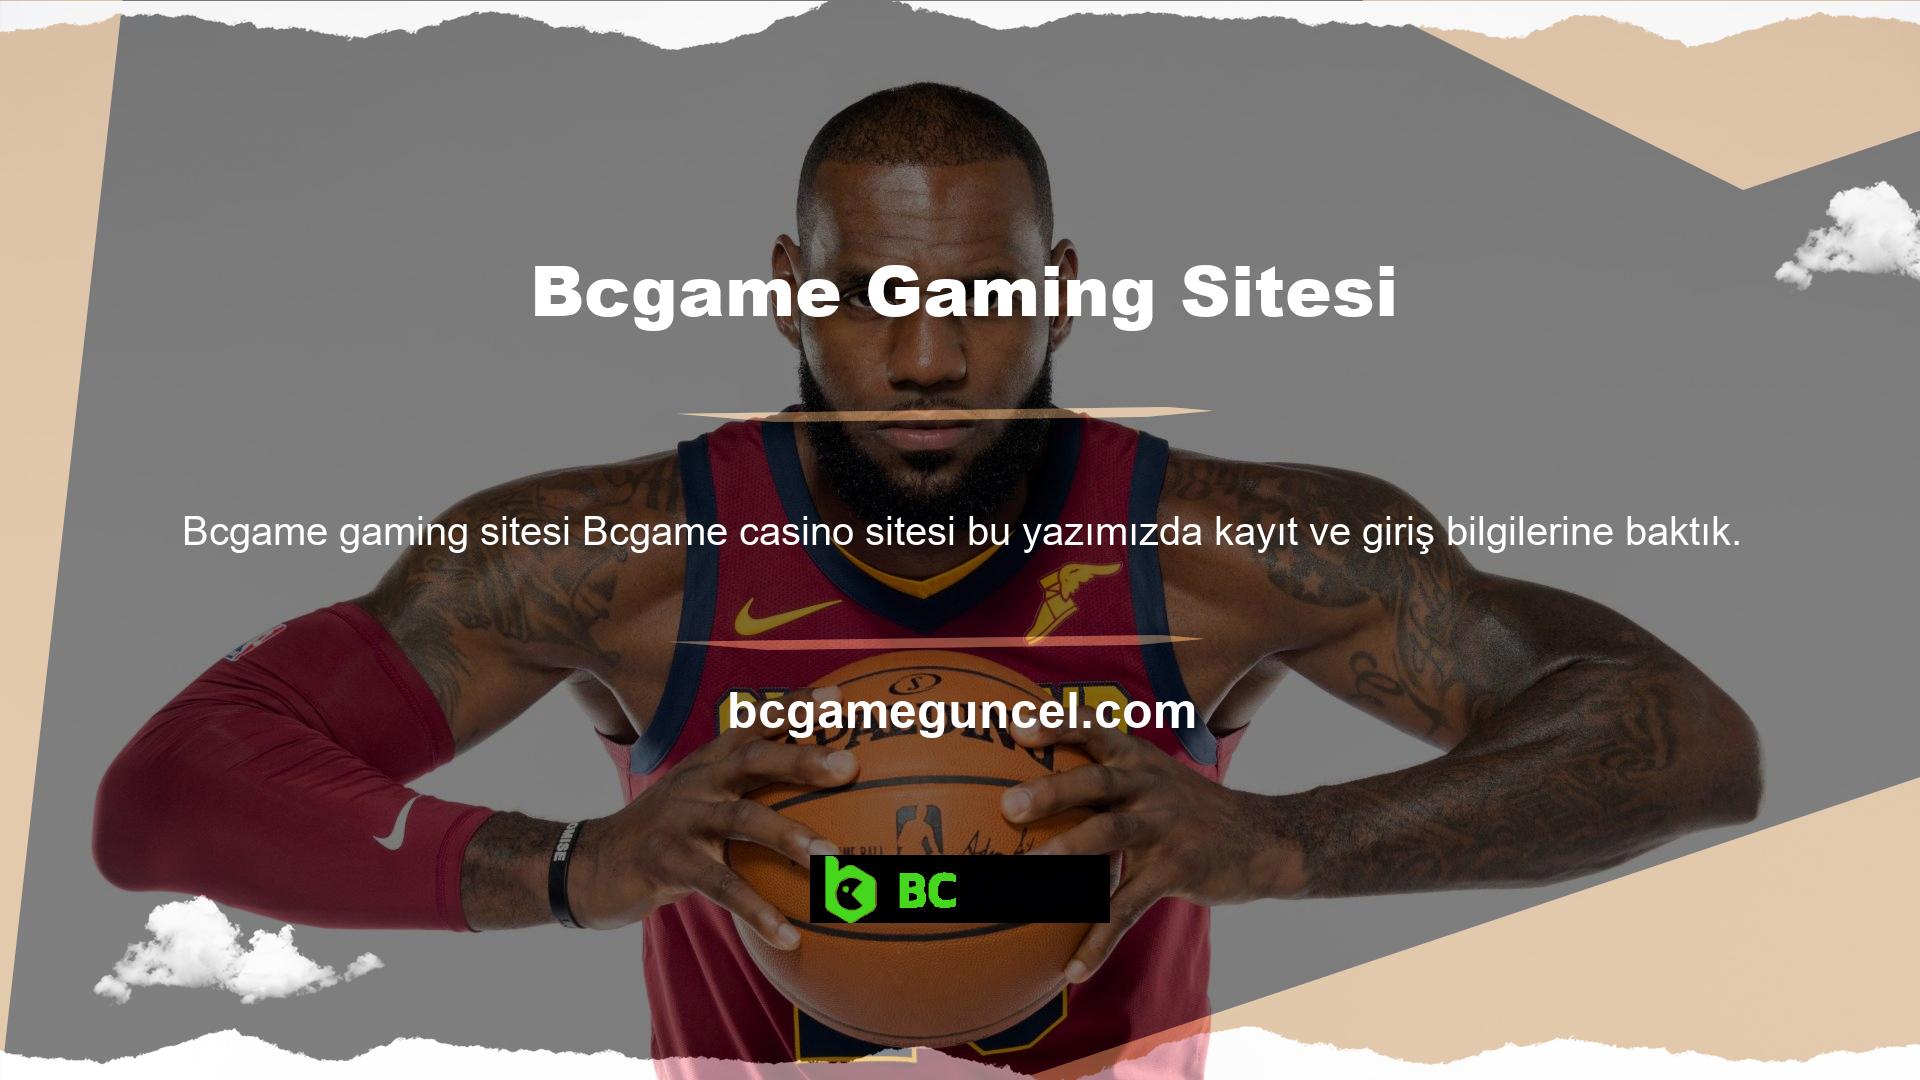 Türk Bcgame oyun sitesinin yeni bahis platformunu ziyaret ettiğinizde, çok sayıda bahis kuponunu güvenli bir şekilde hazırlamak için istisnalar bulacaksınız